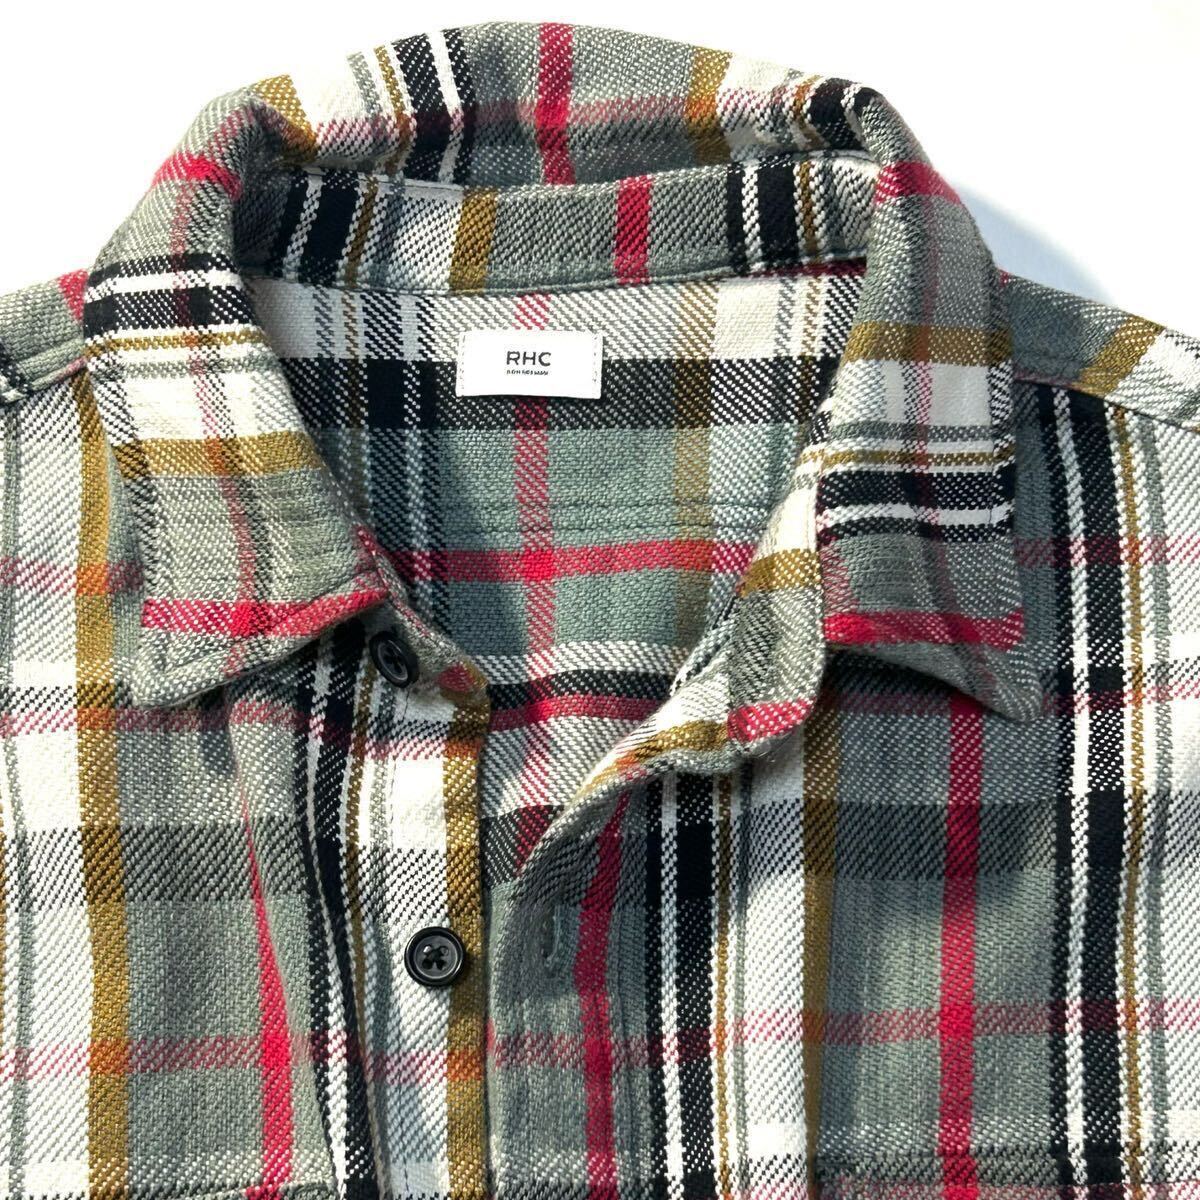 【Ron Herman】PickUp掲載◎!!RHC ロンハーマン 定価3.2万 Heavy Twill Shirts ヘビーツイルチェックシャツ コットンツイル ワークシャツの画像4